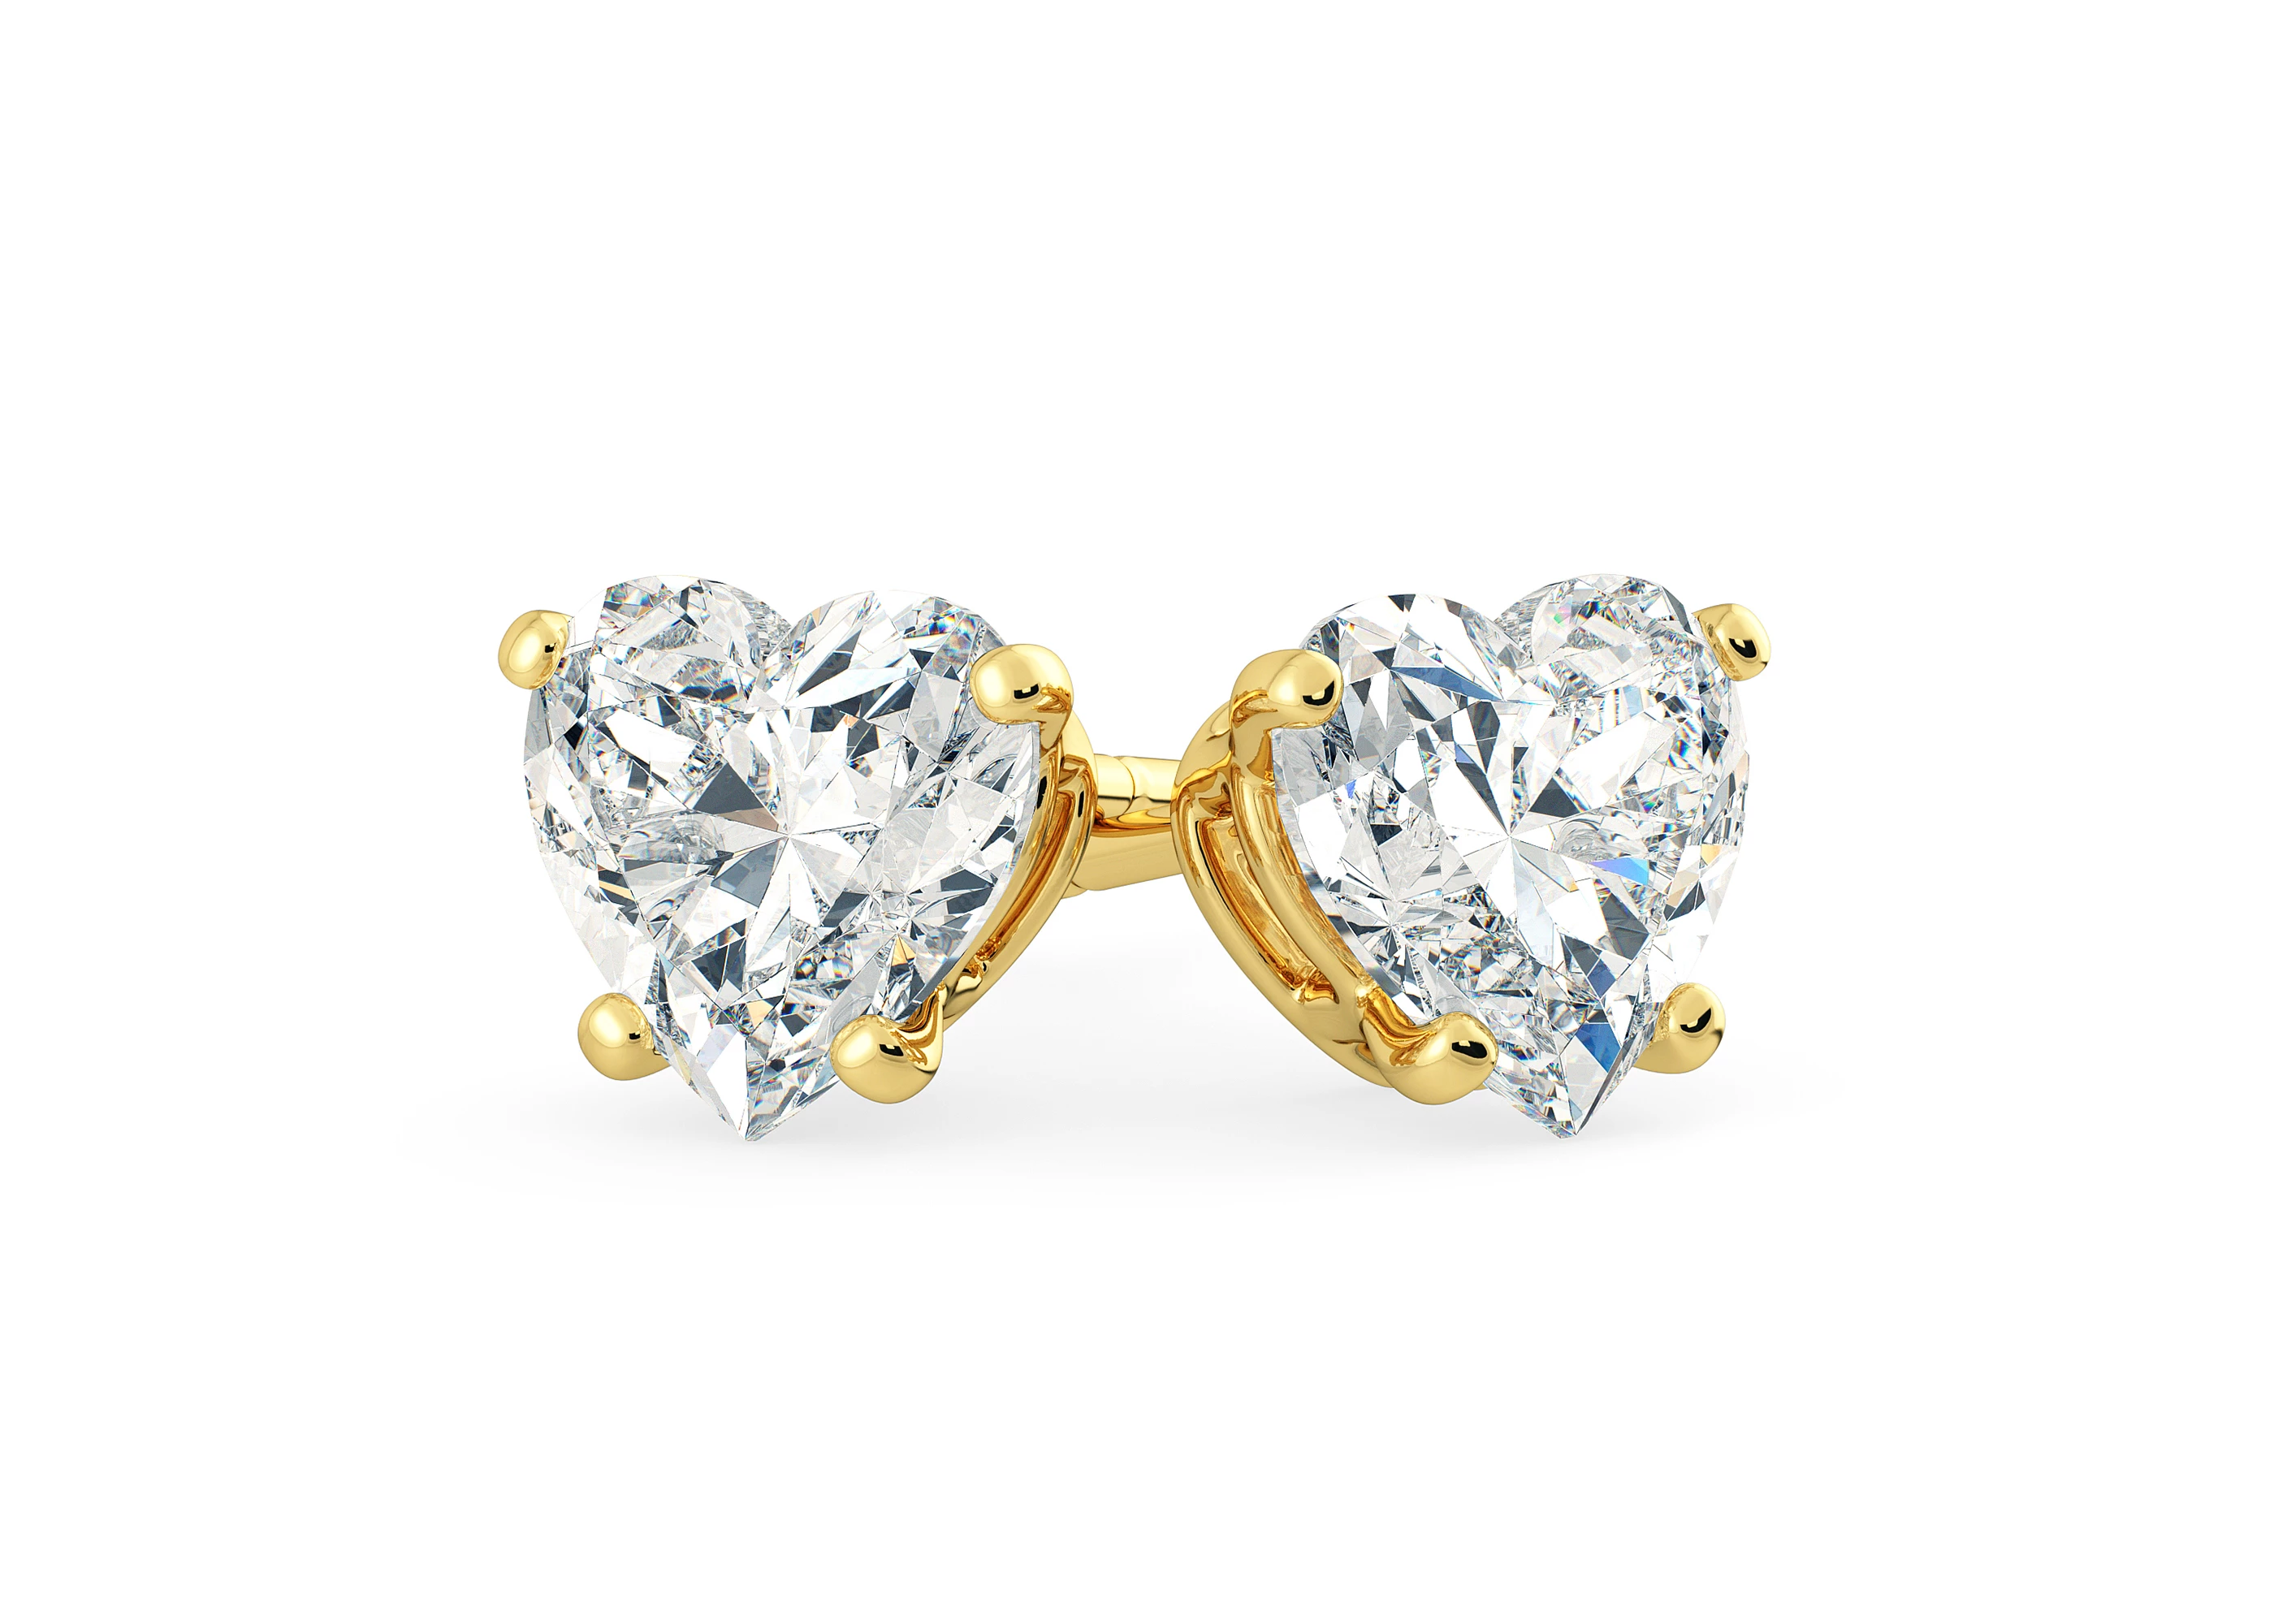 One Carat Heart Diamond Stud Earrings in 18K Yellow Gold